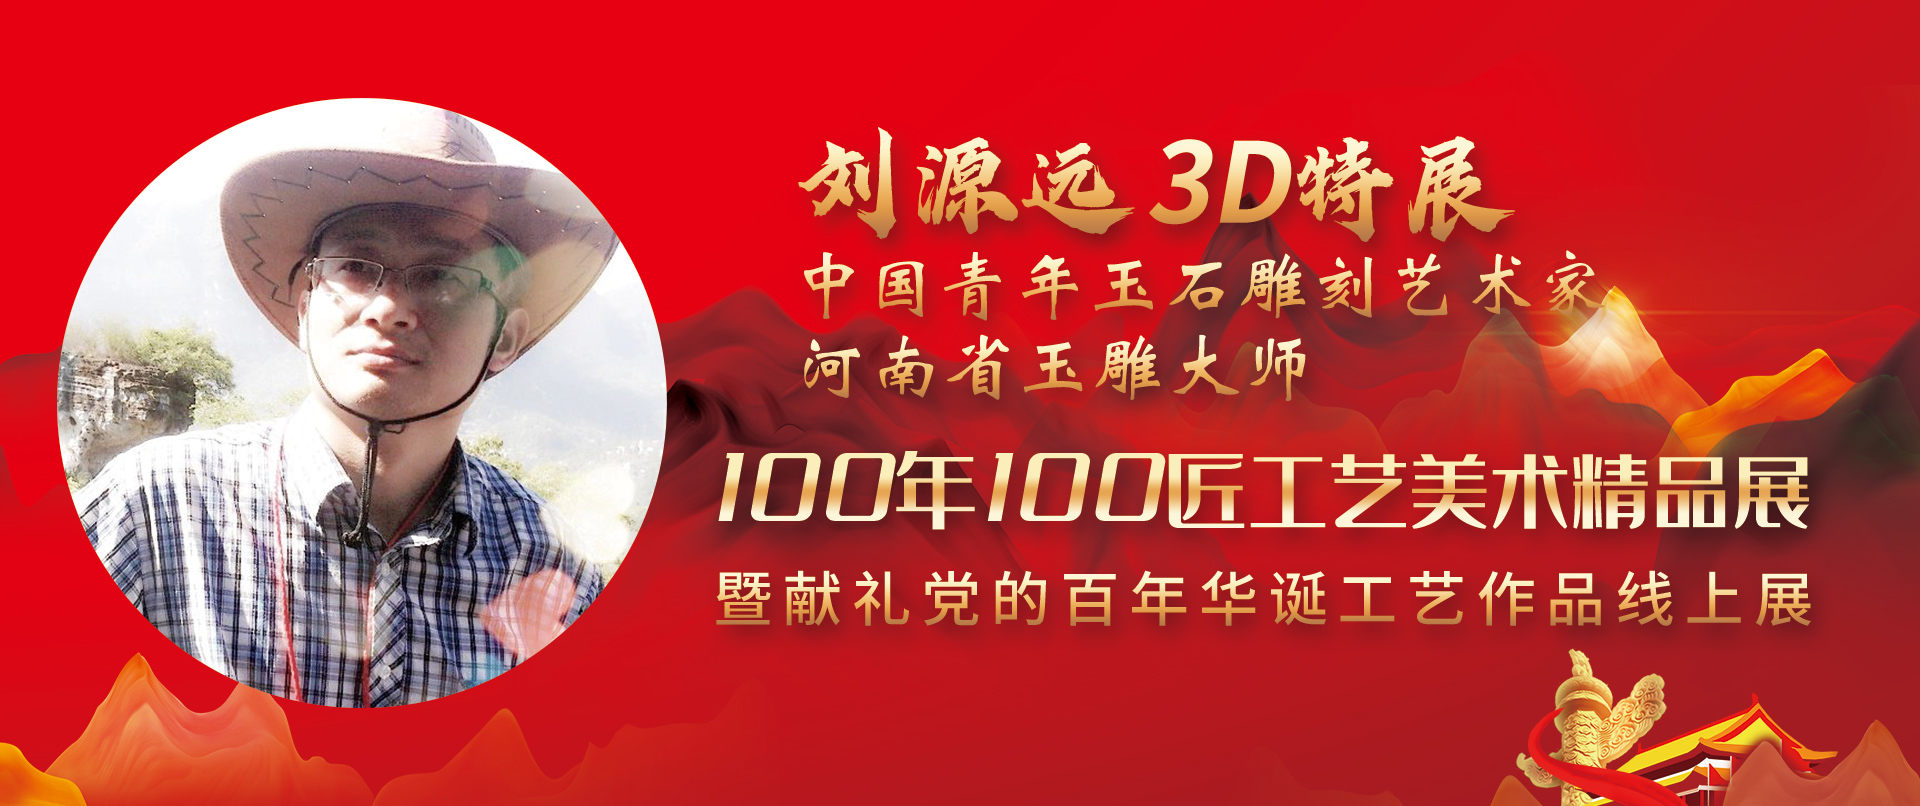 刘源远3D特展-100年100匠工艺美术精品展